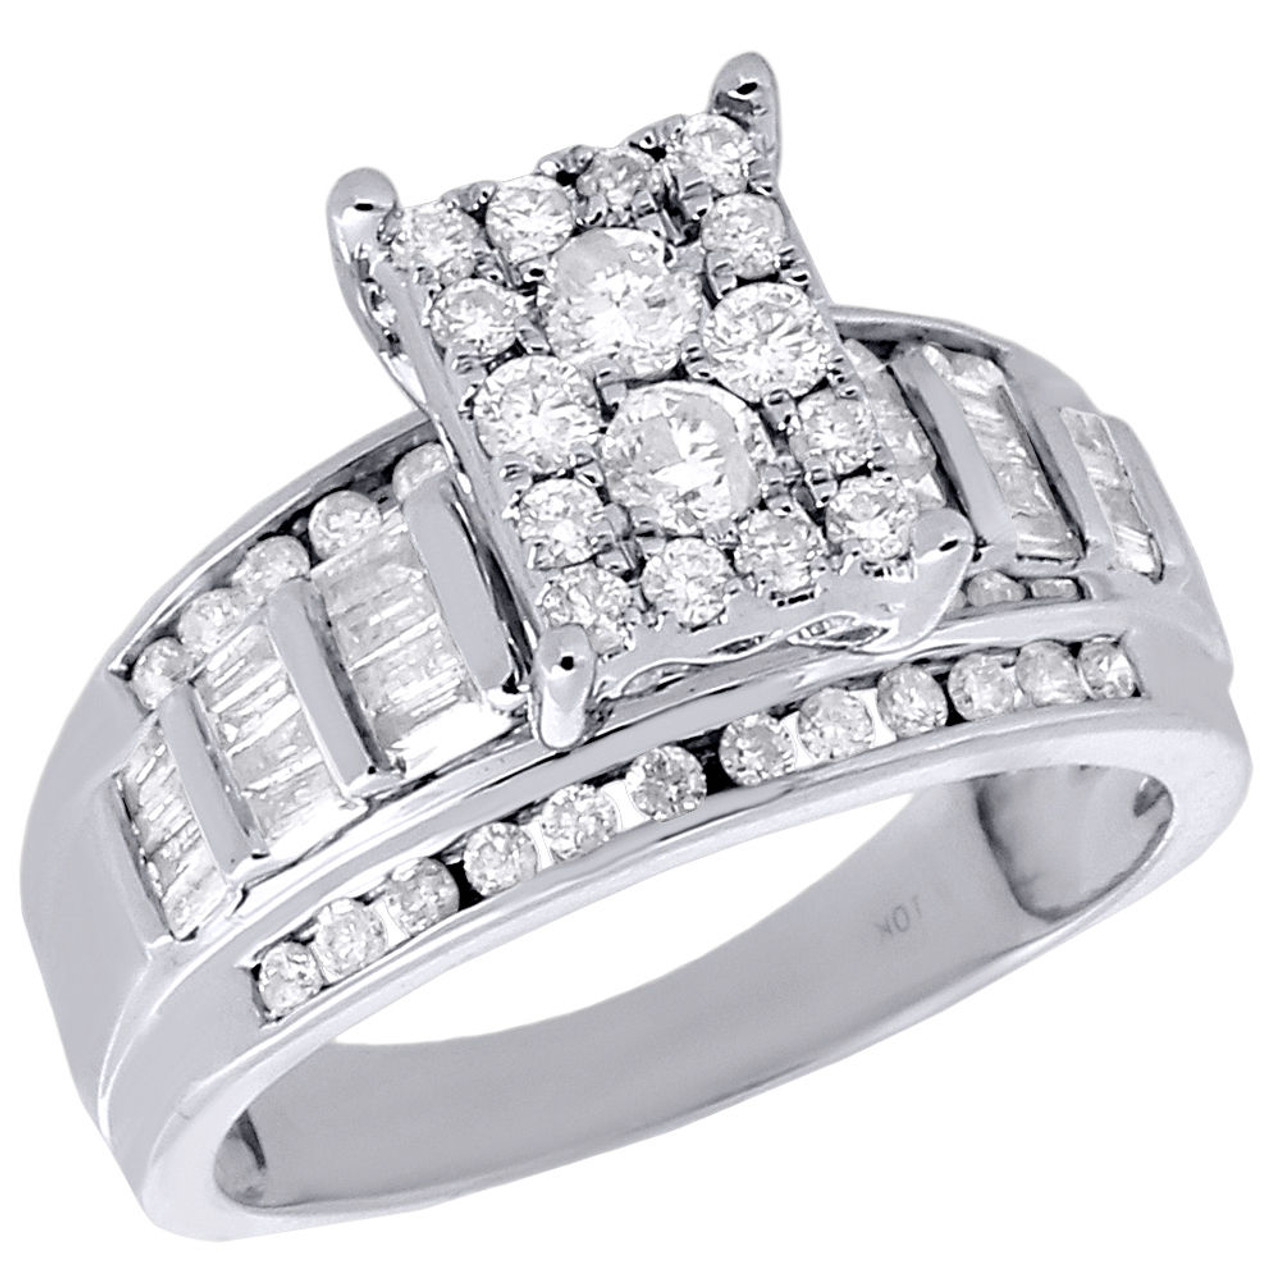 Anillo de compromiso para mujer de oro blanco de 10 quilates redondo y baguette diamantes genuinos de 0,90 ct. - Diamantes y